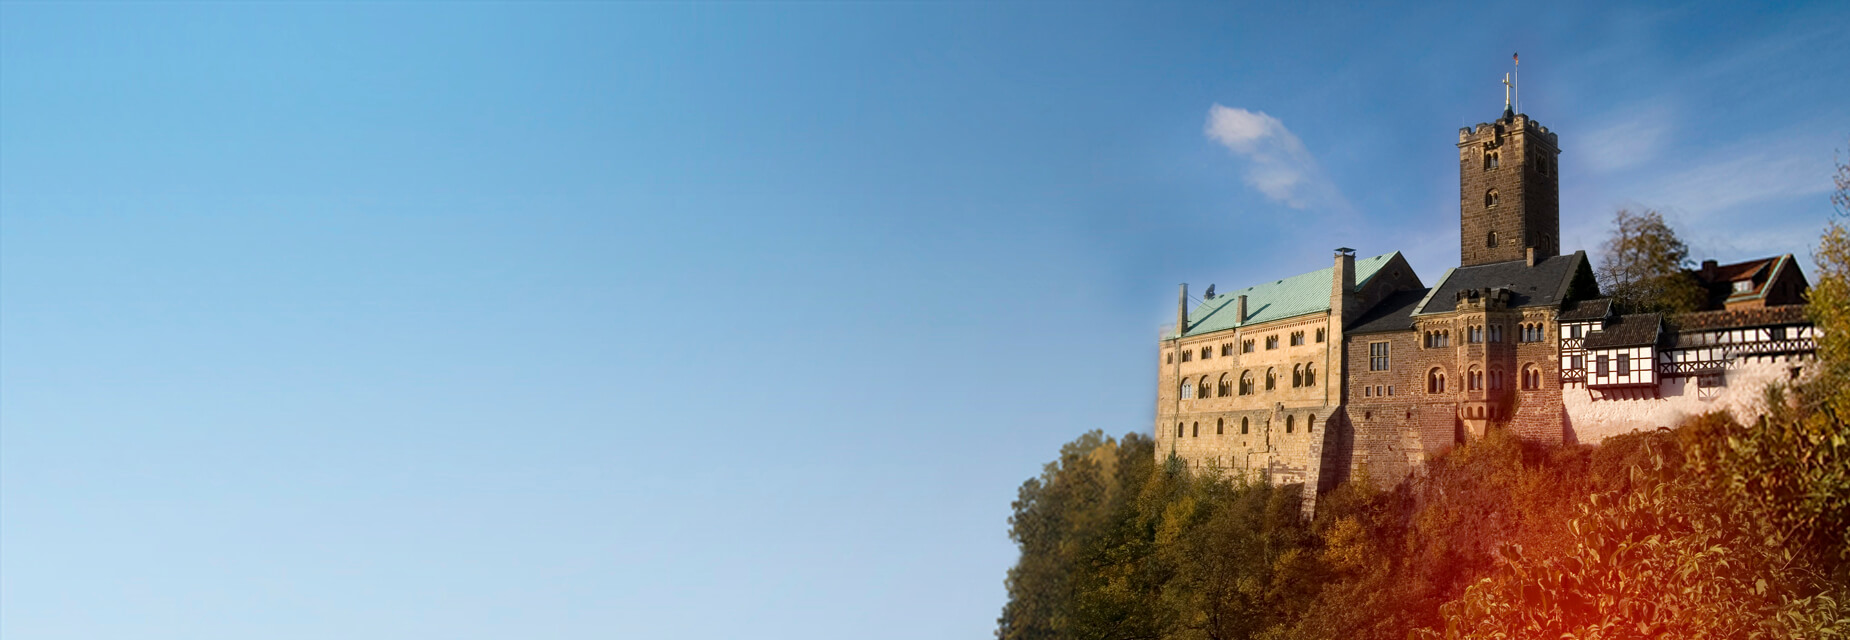 Wartburg - Ansicht Burg auf Berg